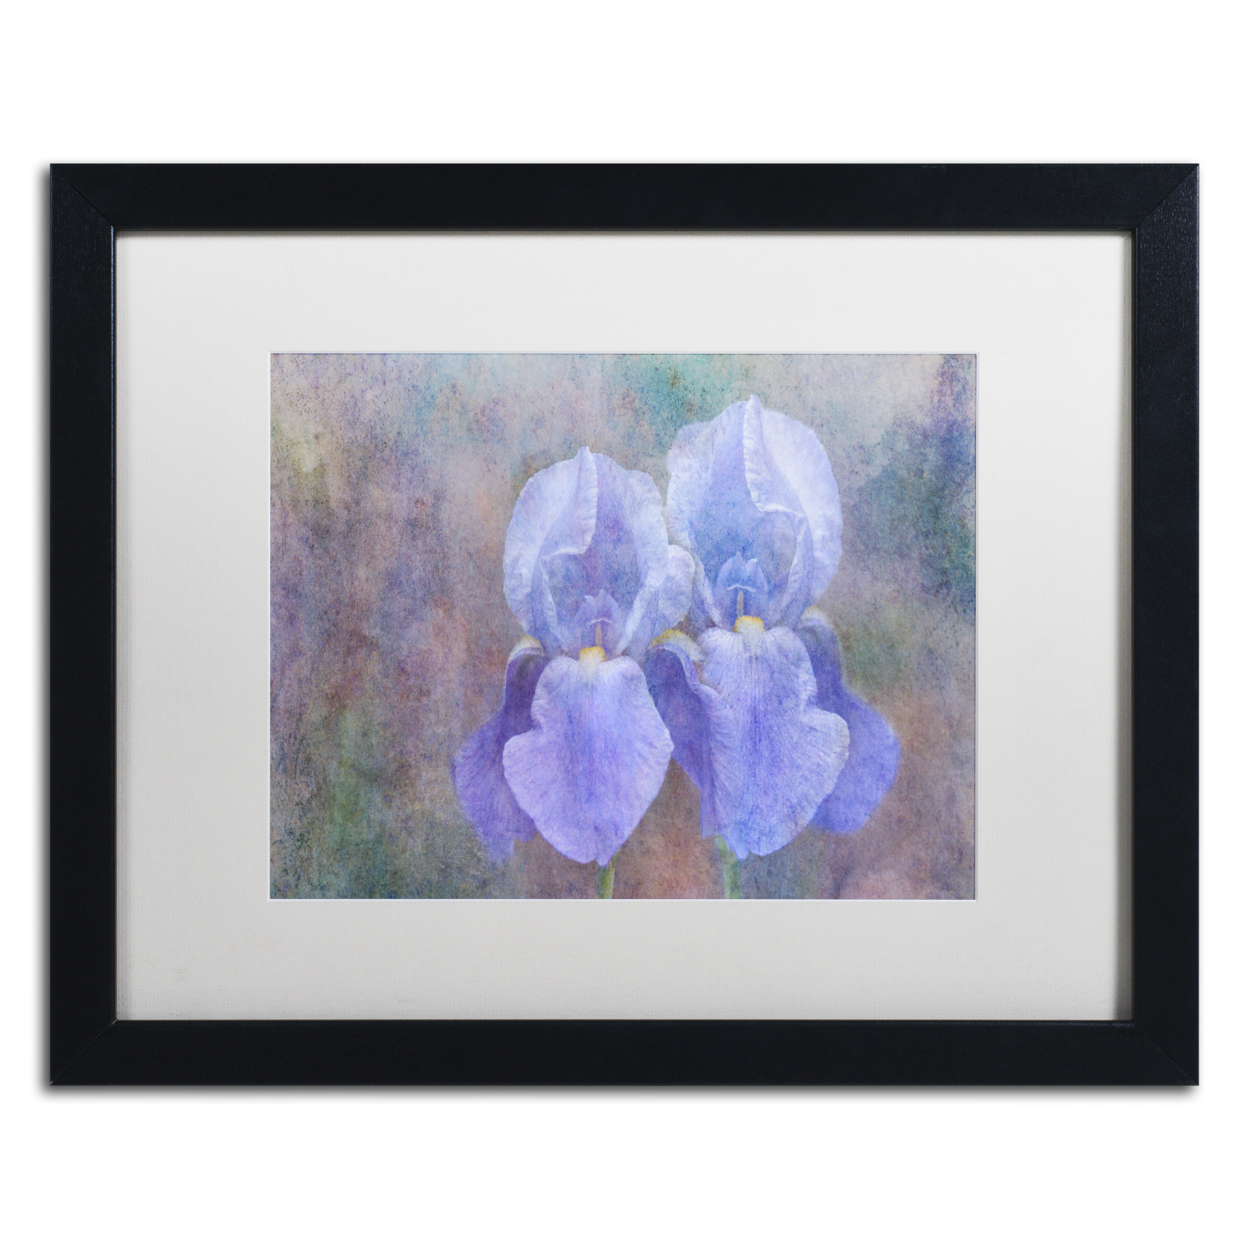 Cora Niele 'Iris Blue Rhythm' Black Wooden Framed Art 18 X 22 Inches